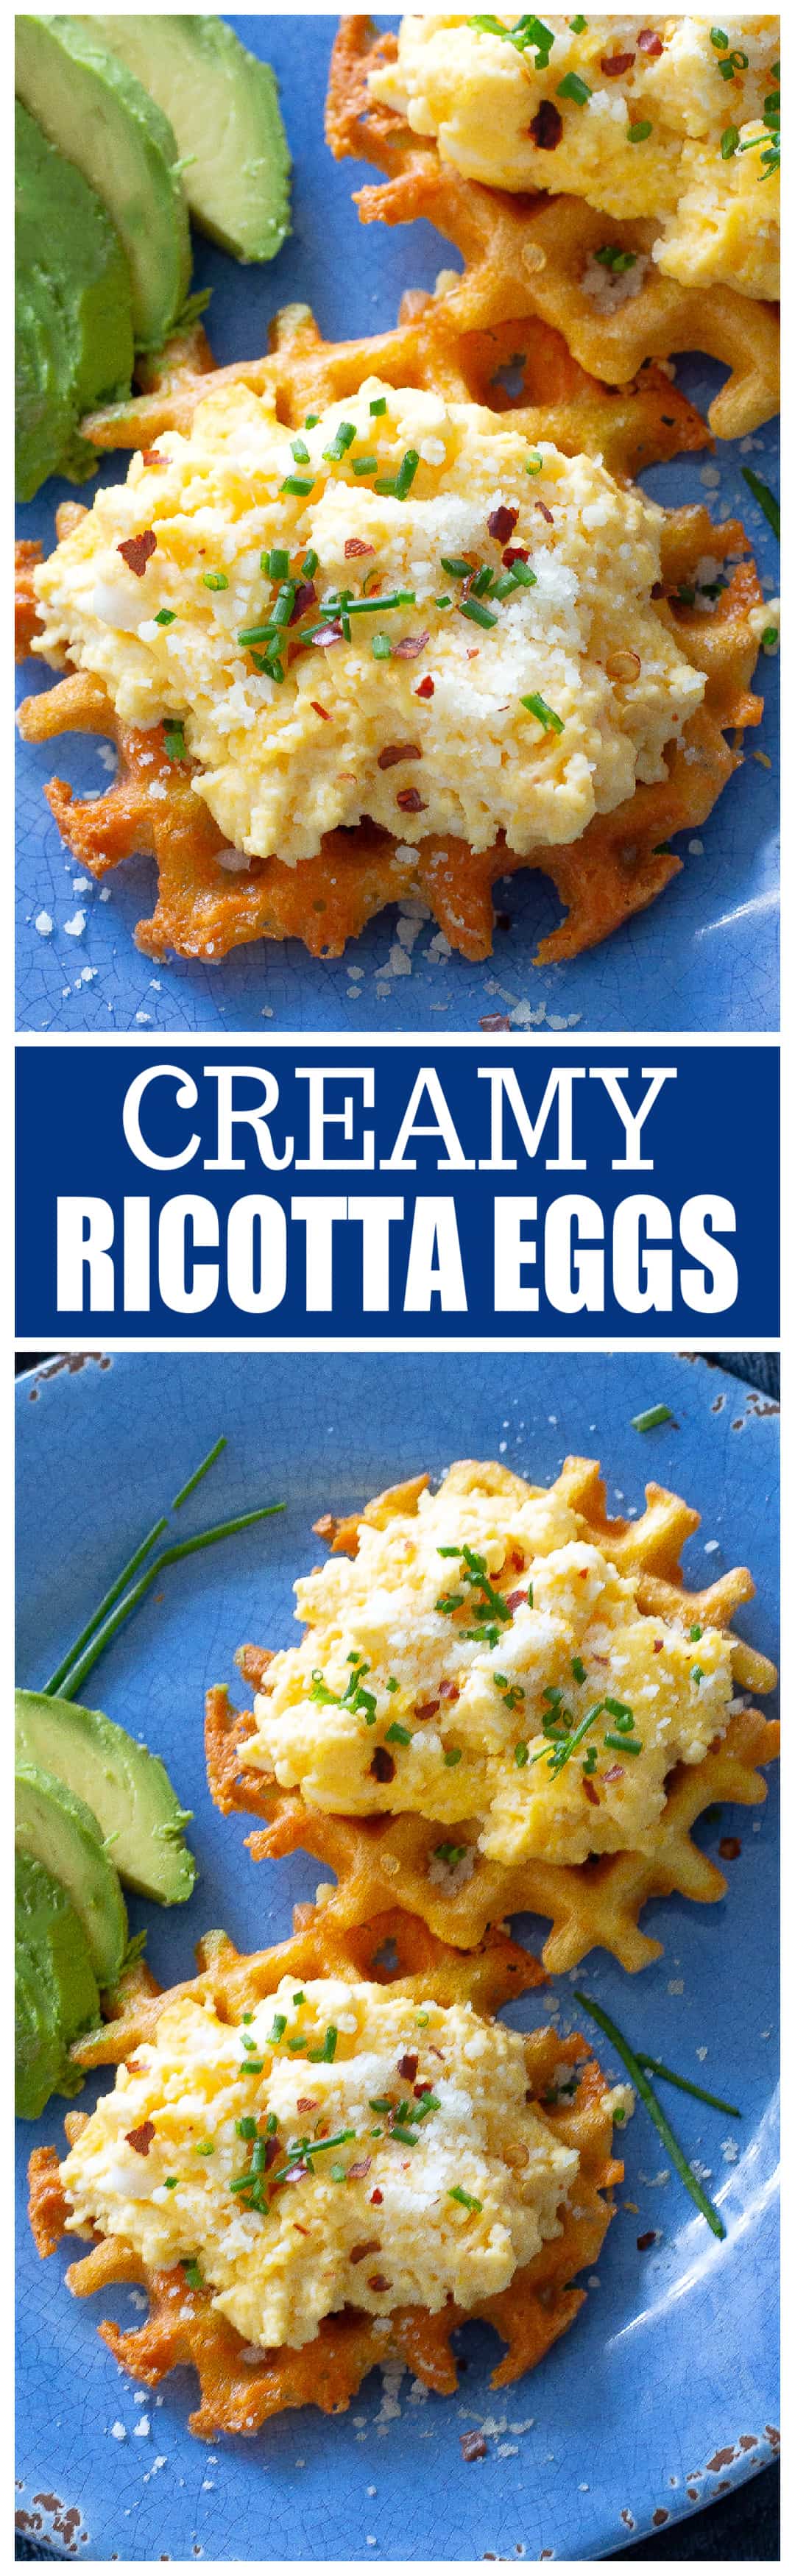 Ricotta eggs